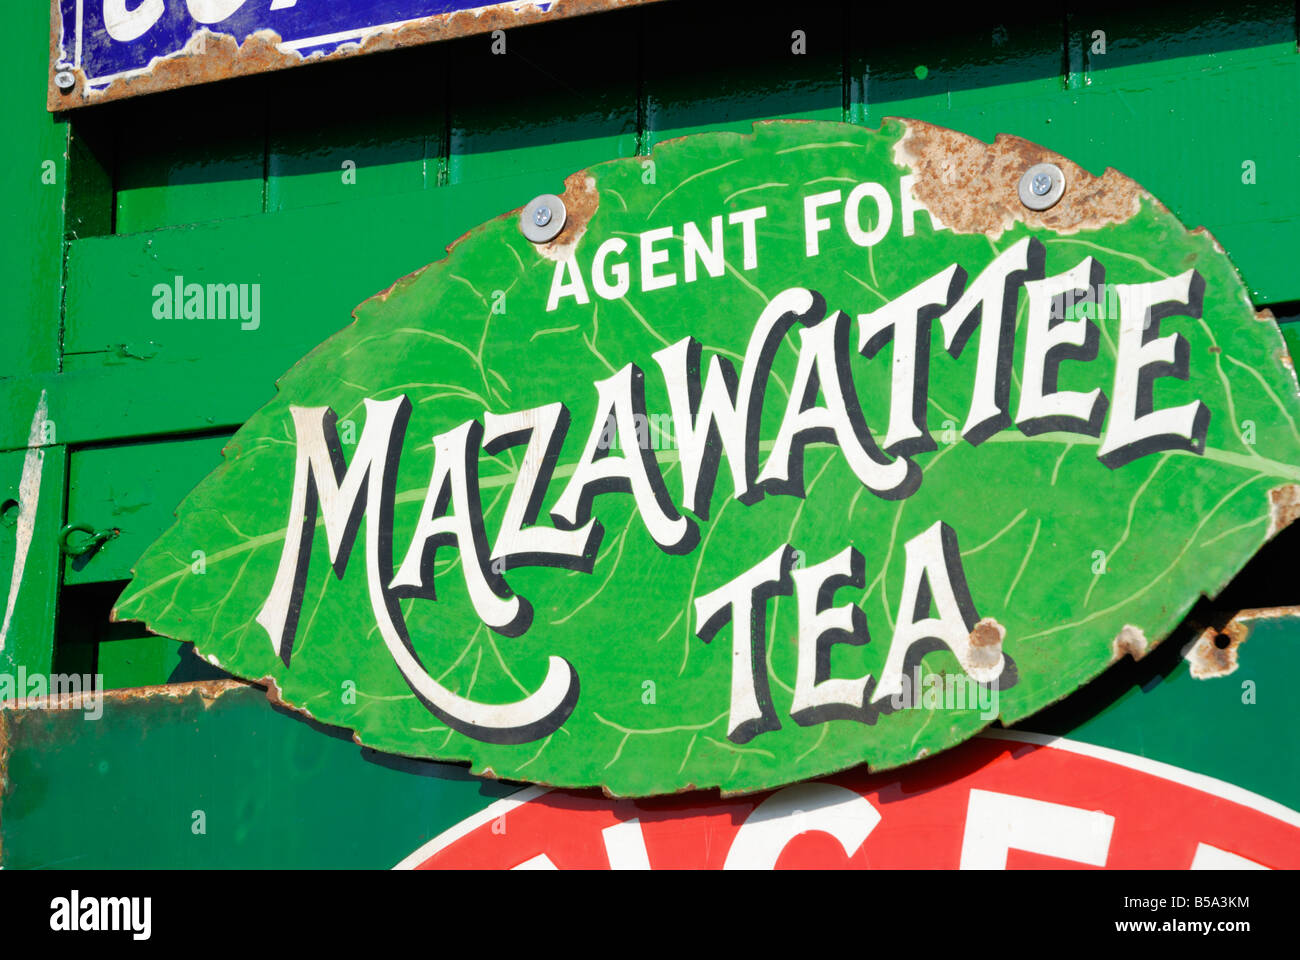 Old sign advertising Mazawattee Tea Stock Photo